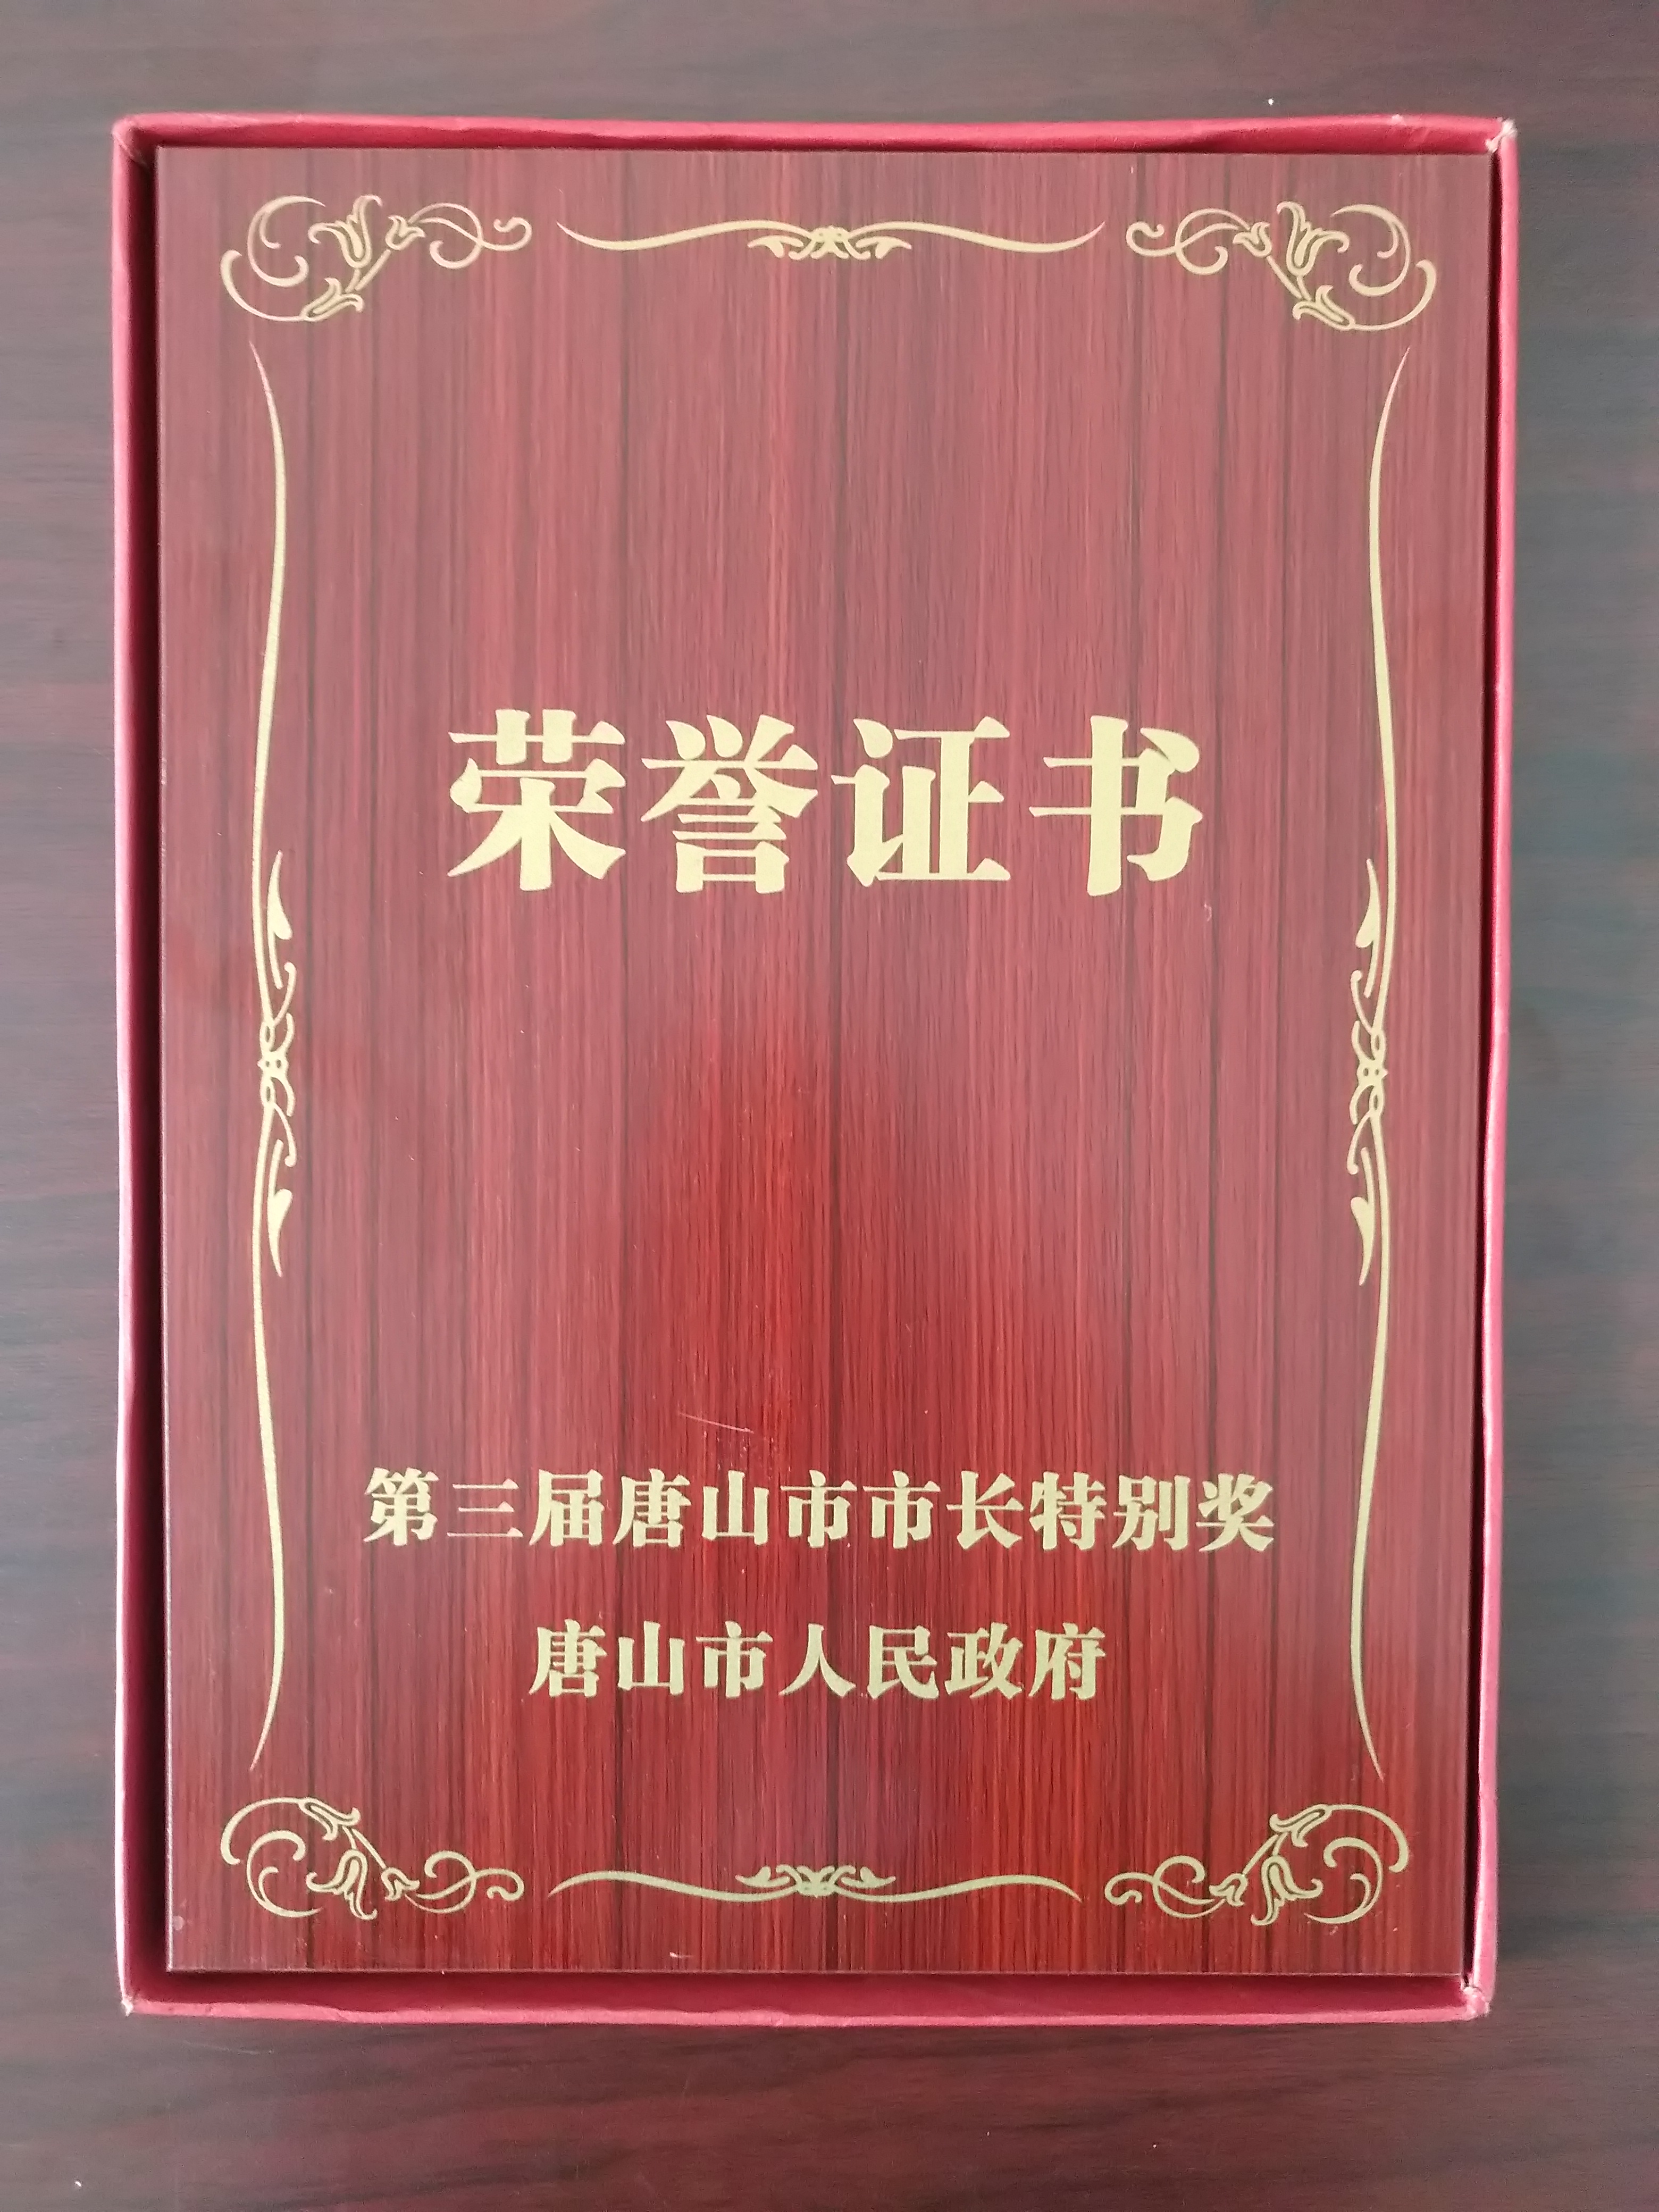 2019年8月21日唐山市第三届市长特别奖-证书